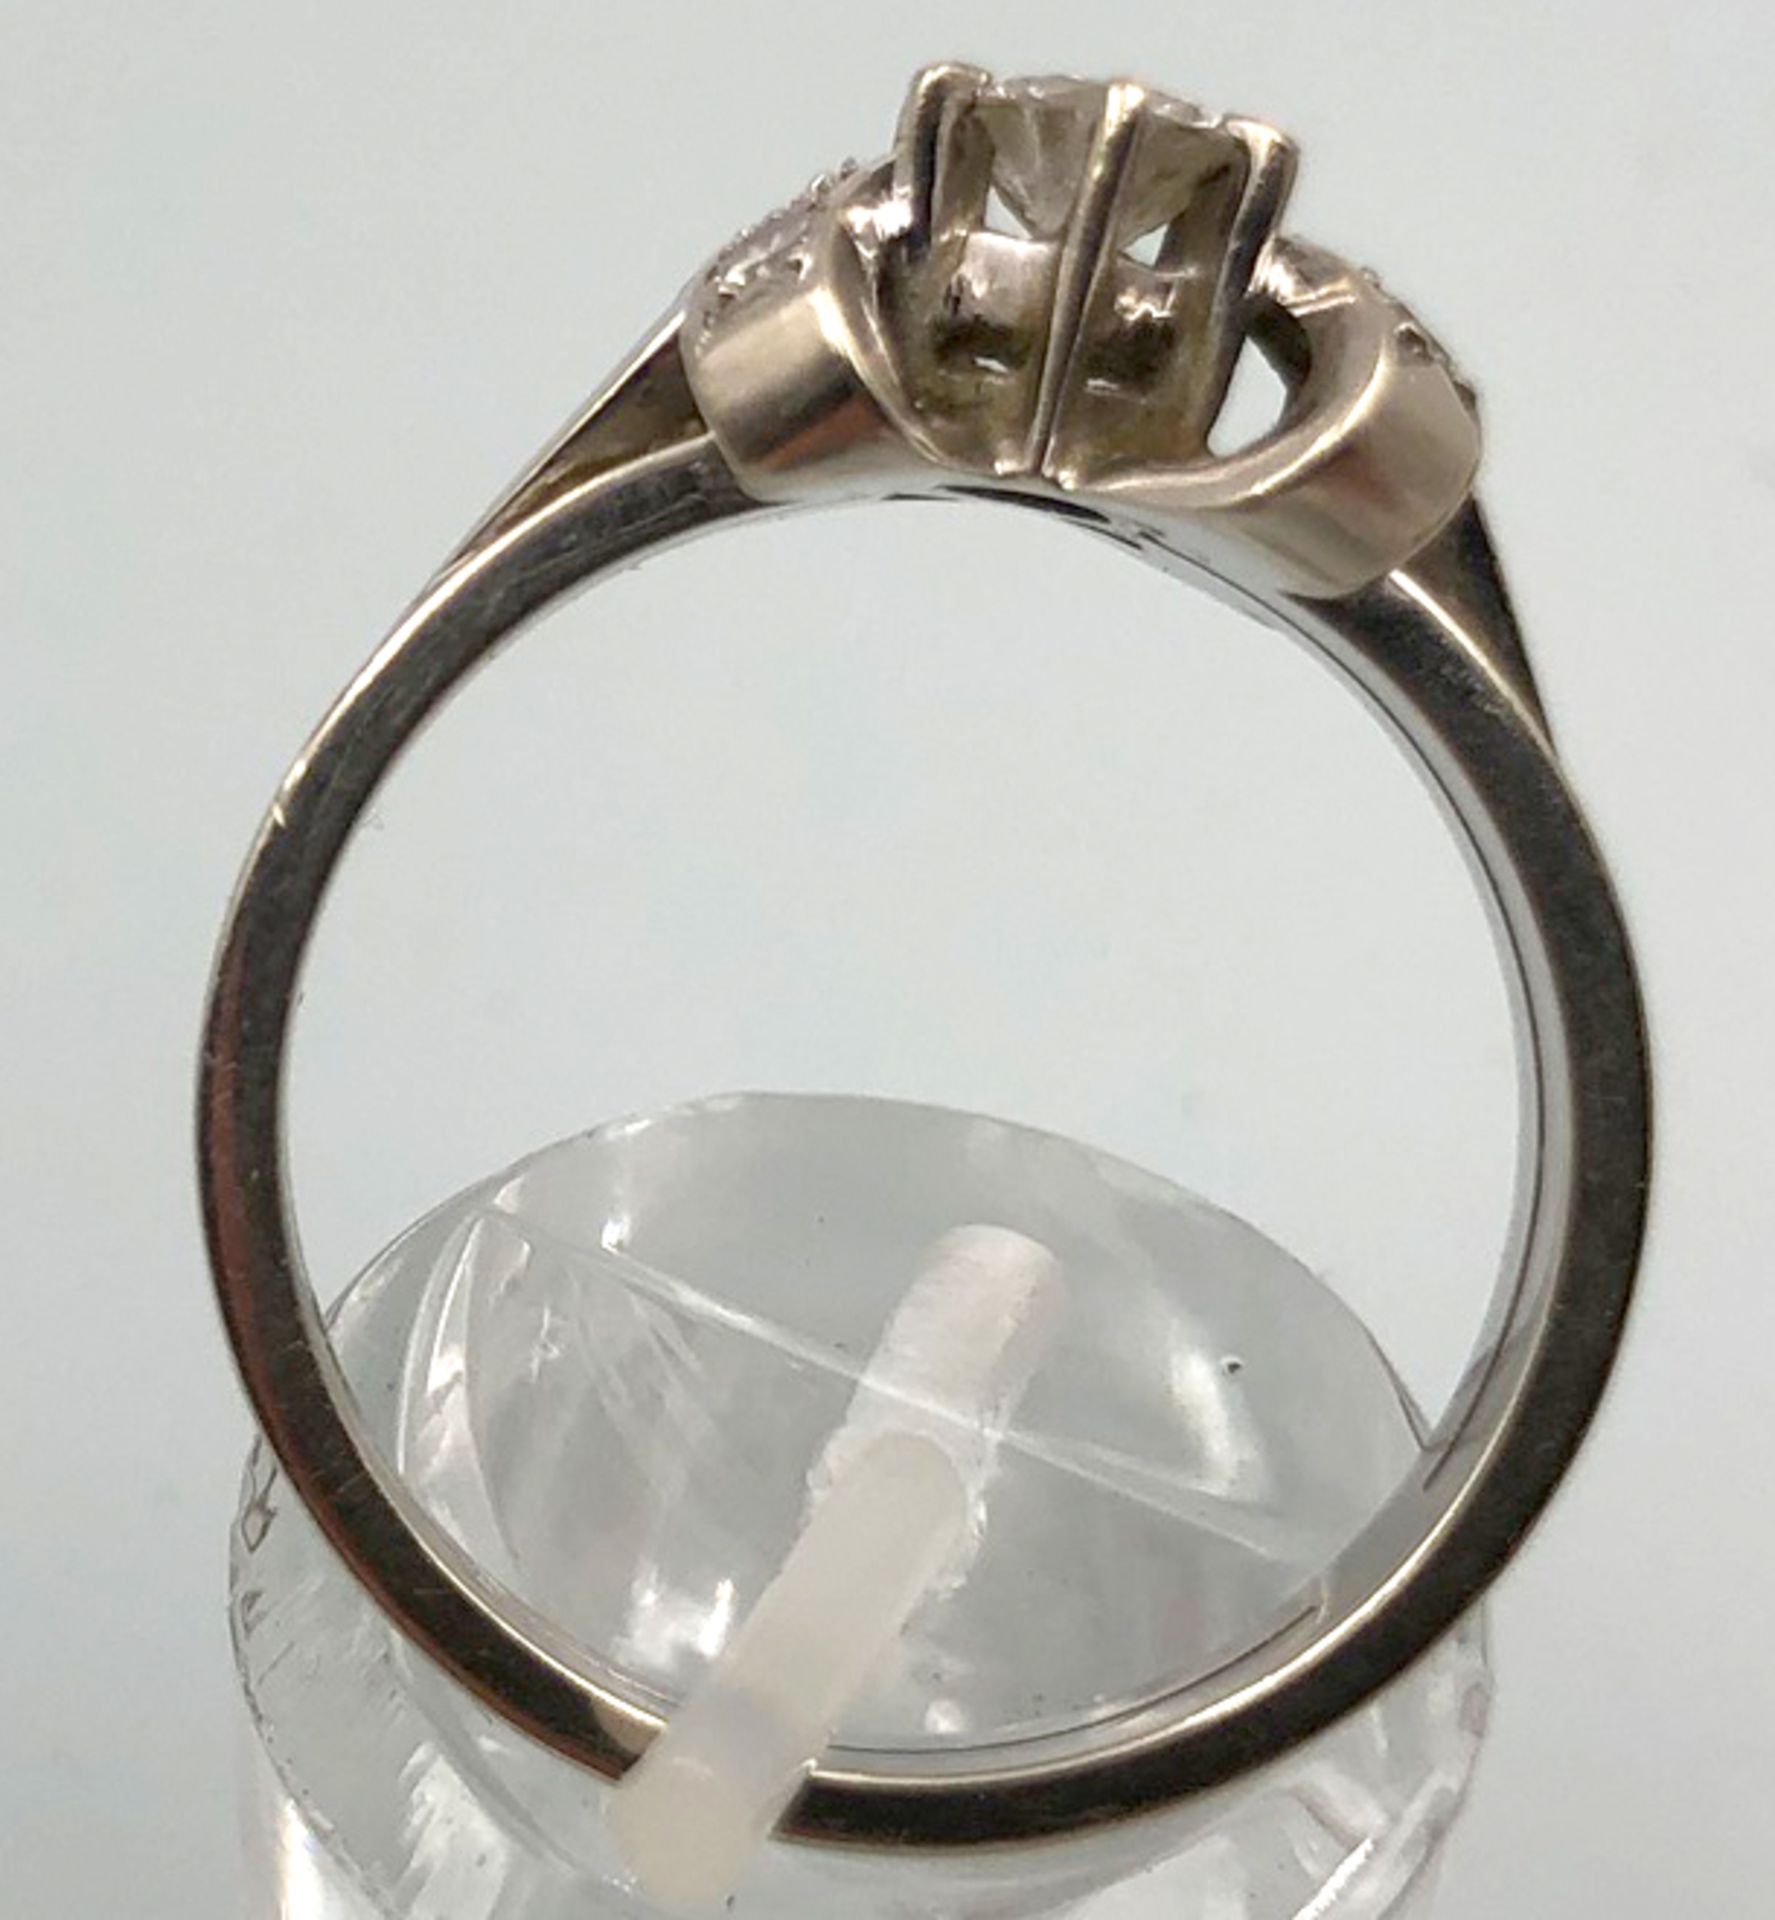 Weiß Gold 585. Ring mit Brillanten.4,0 Gramm Gesamtgewicht. Der mittige Diamant 4,48 mm Durchmesser, - Bild 9 aus 13